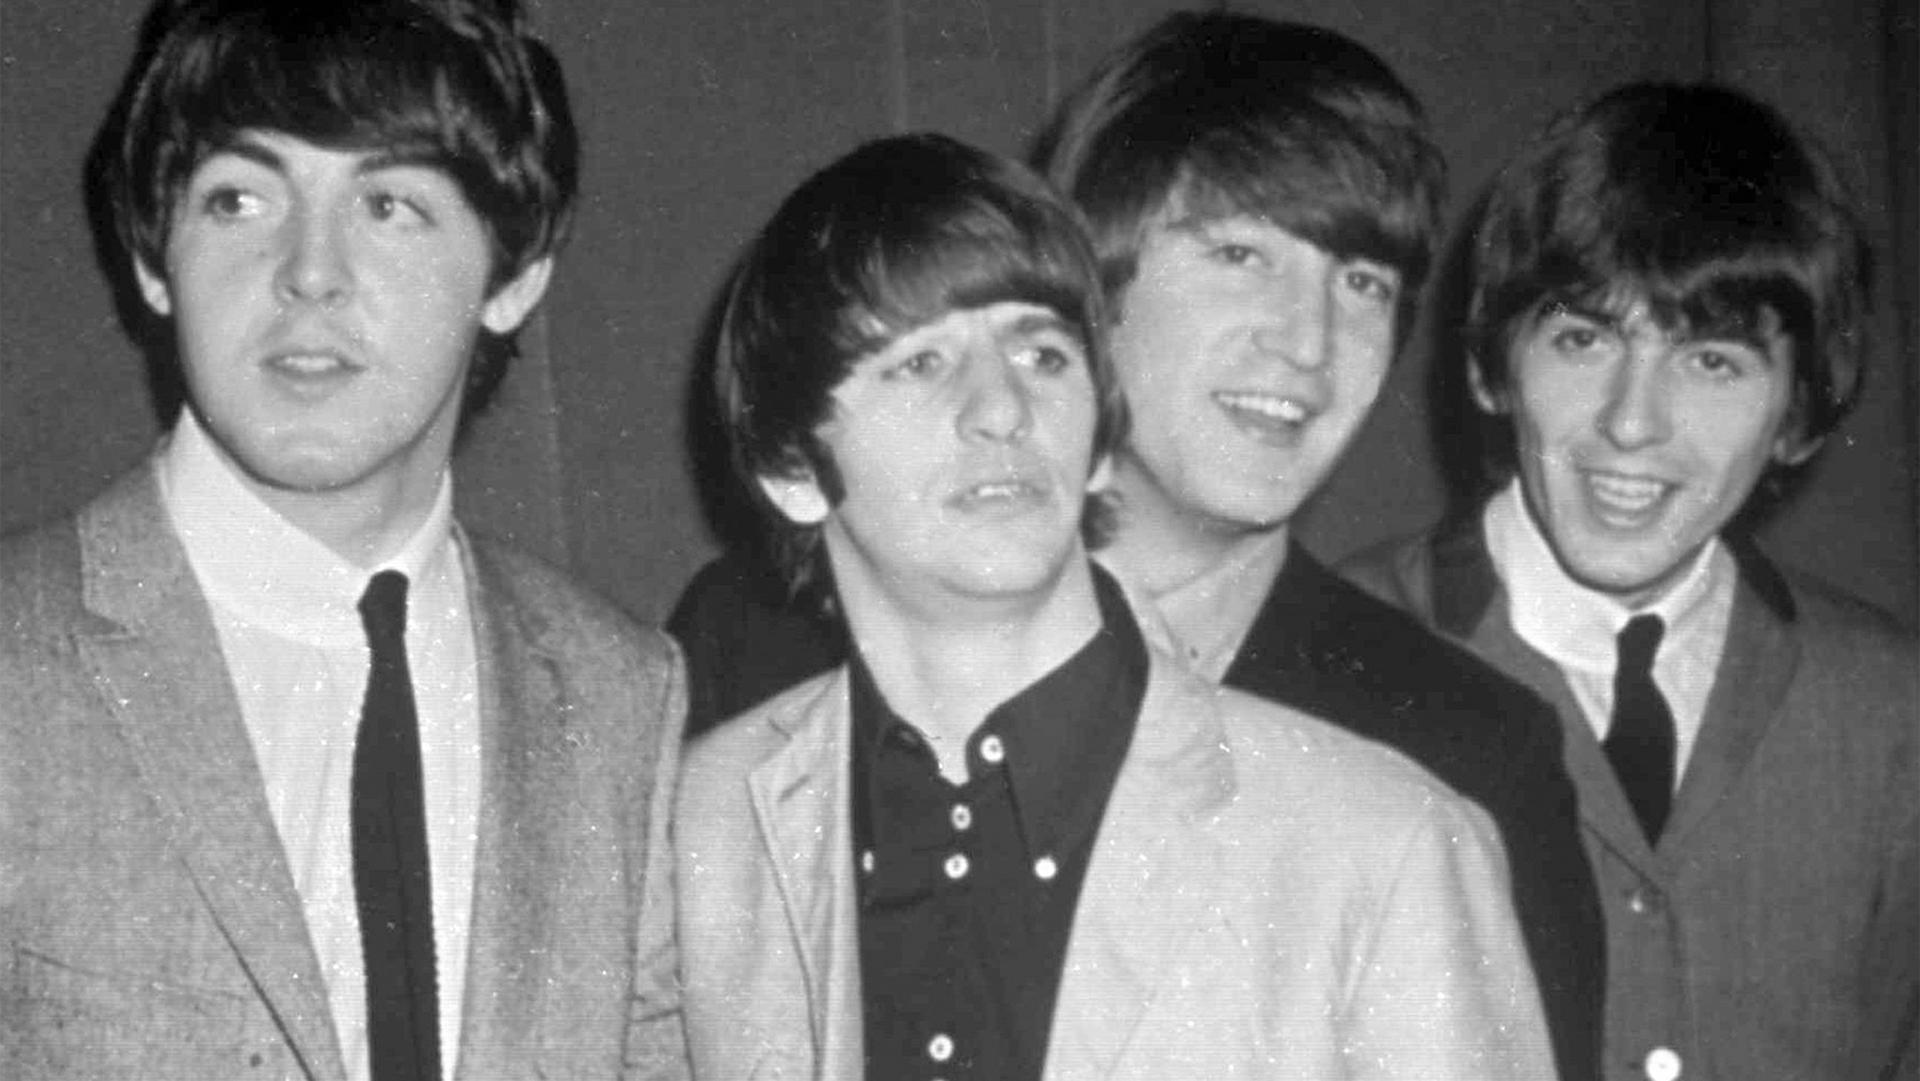 The Beatles, from left, Paul McCartney, Ringo Starr, John Lennon and George Harrison